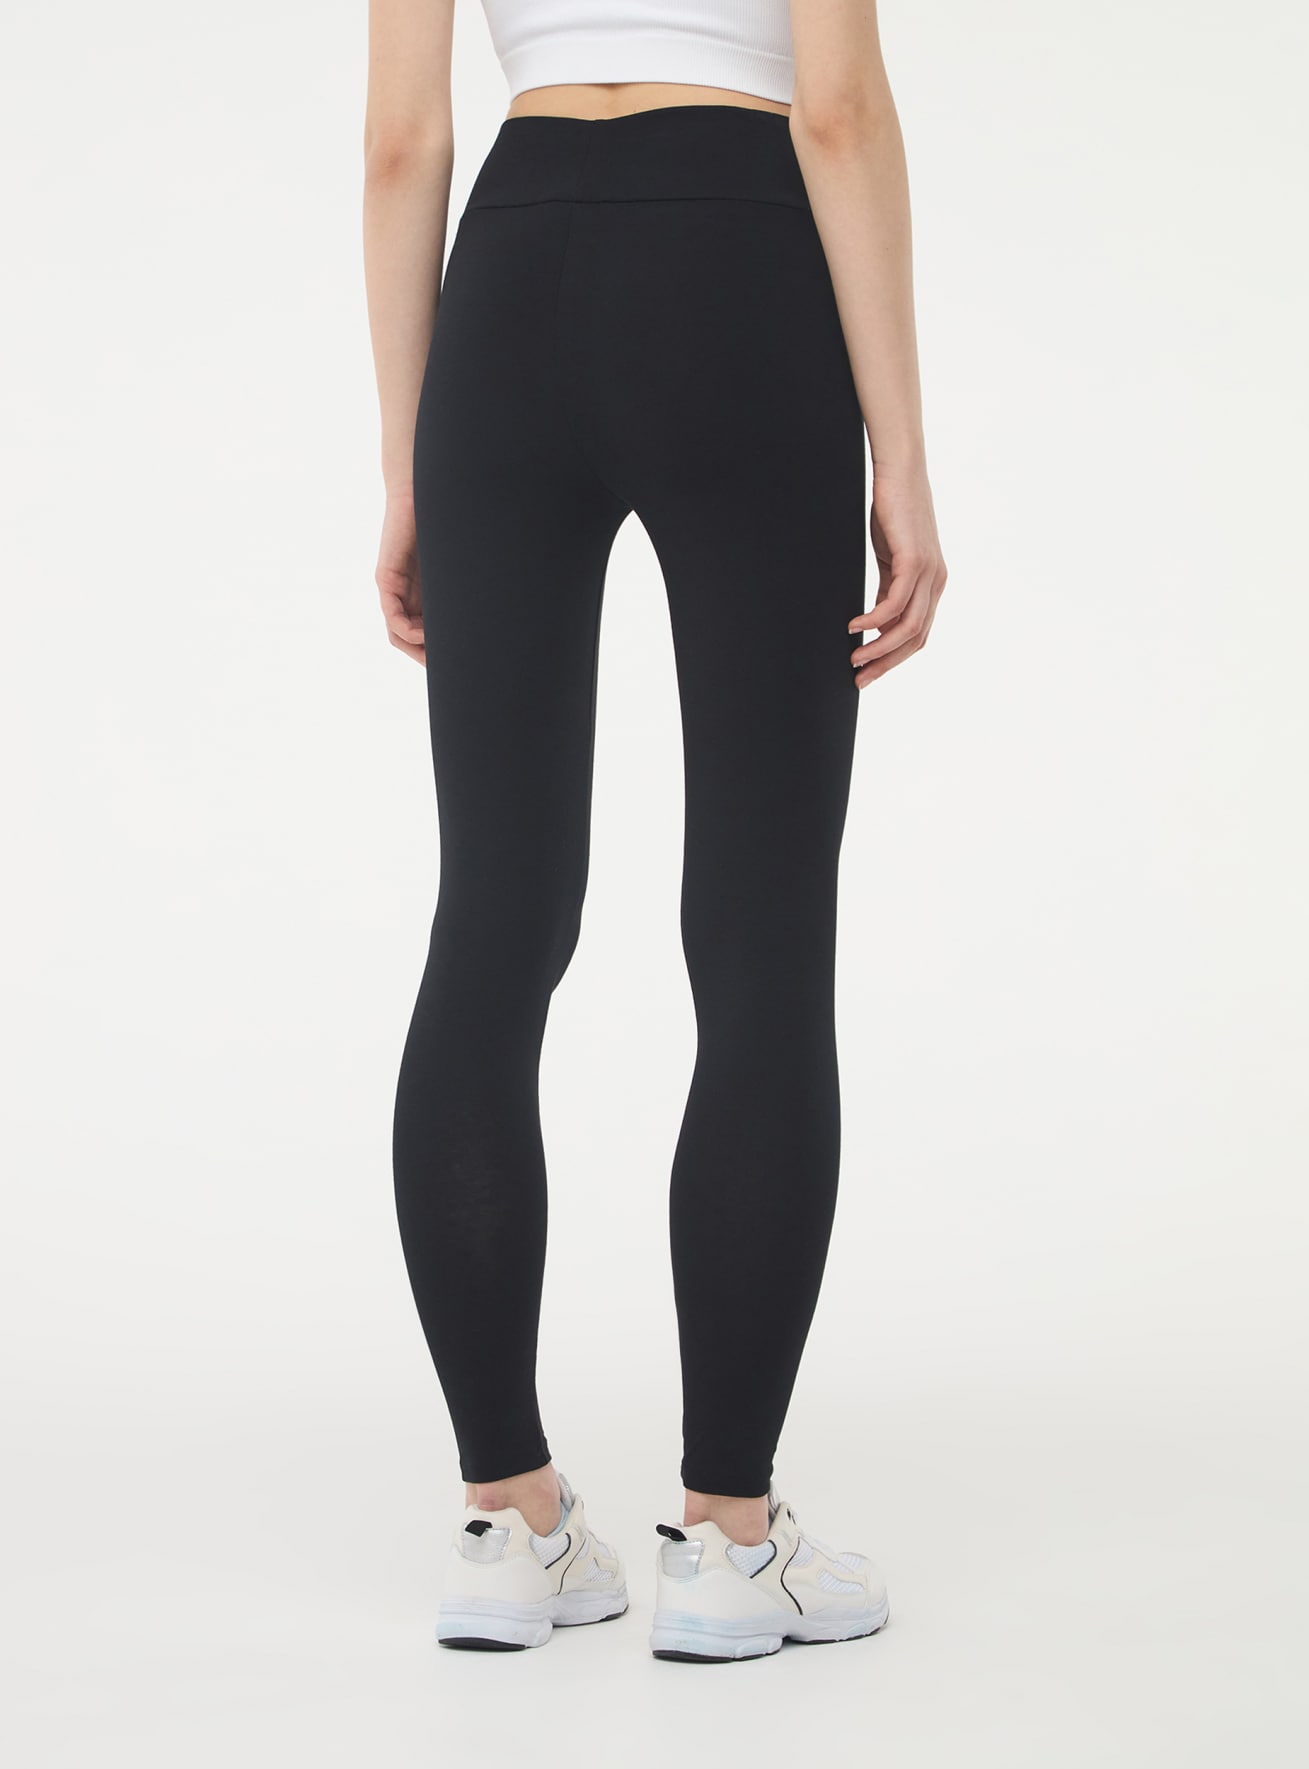 Black Plain high-waisted leggings - Buy Online